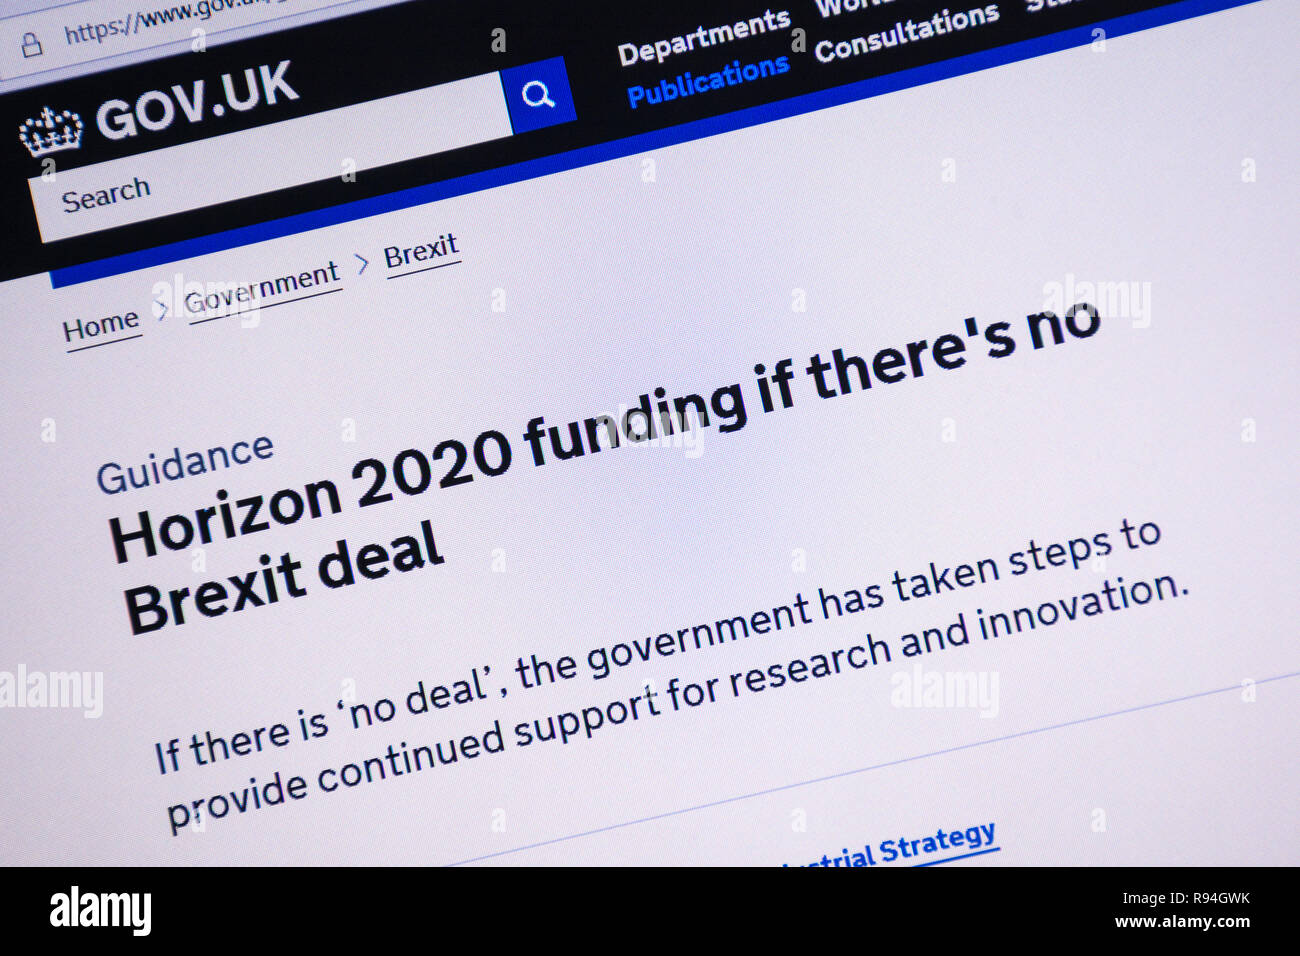 Immagine del calcolatore del gov.uk sito web che mostra informazioni sull'orizzonte 2020 finanziamenti se non vi è alcuna trattativa Brexit Foto Stock